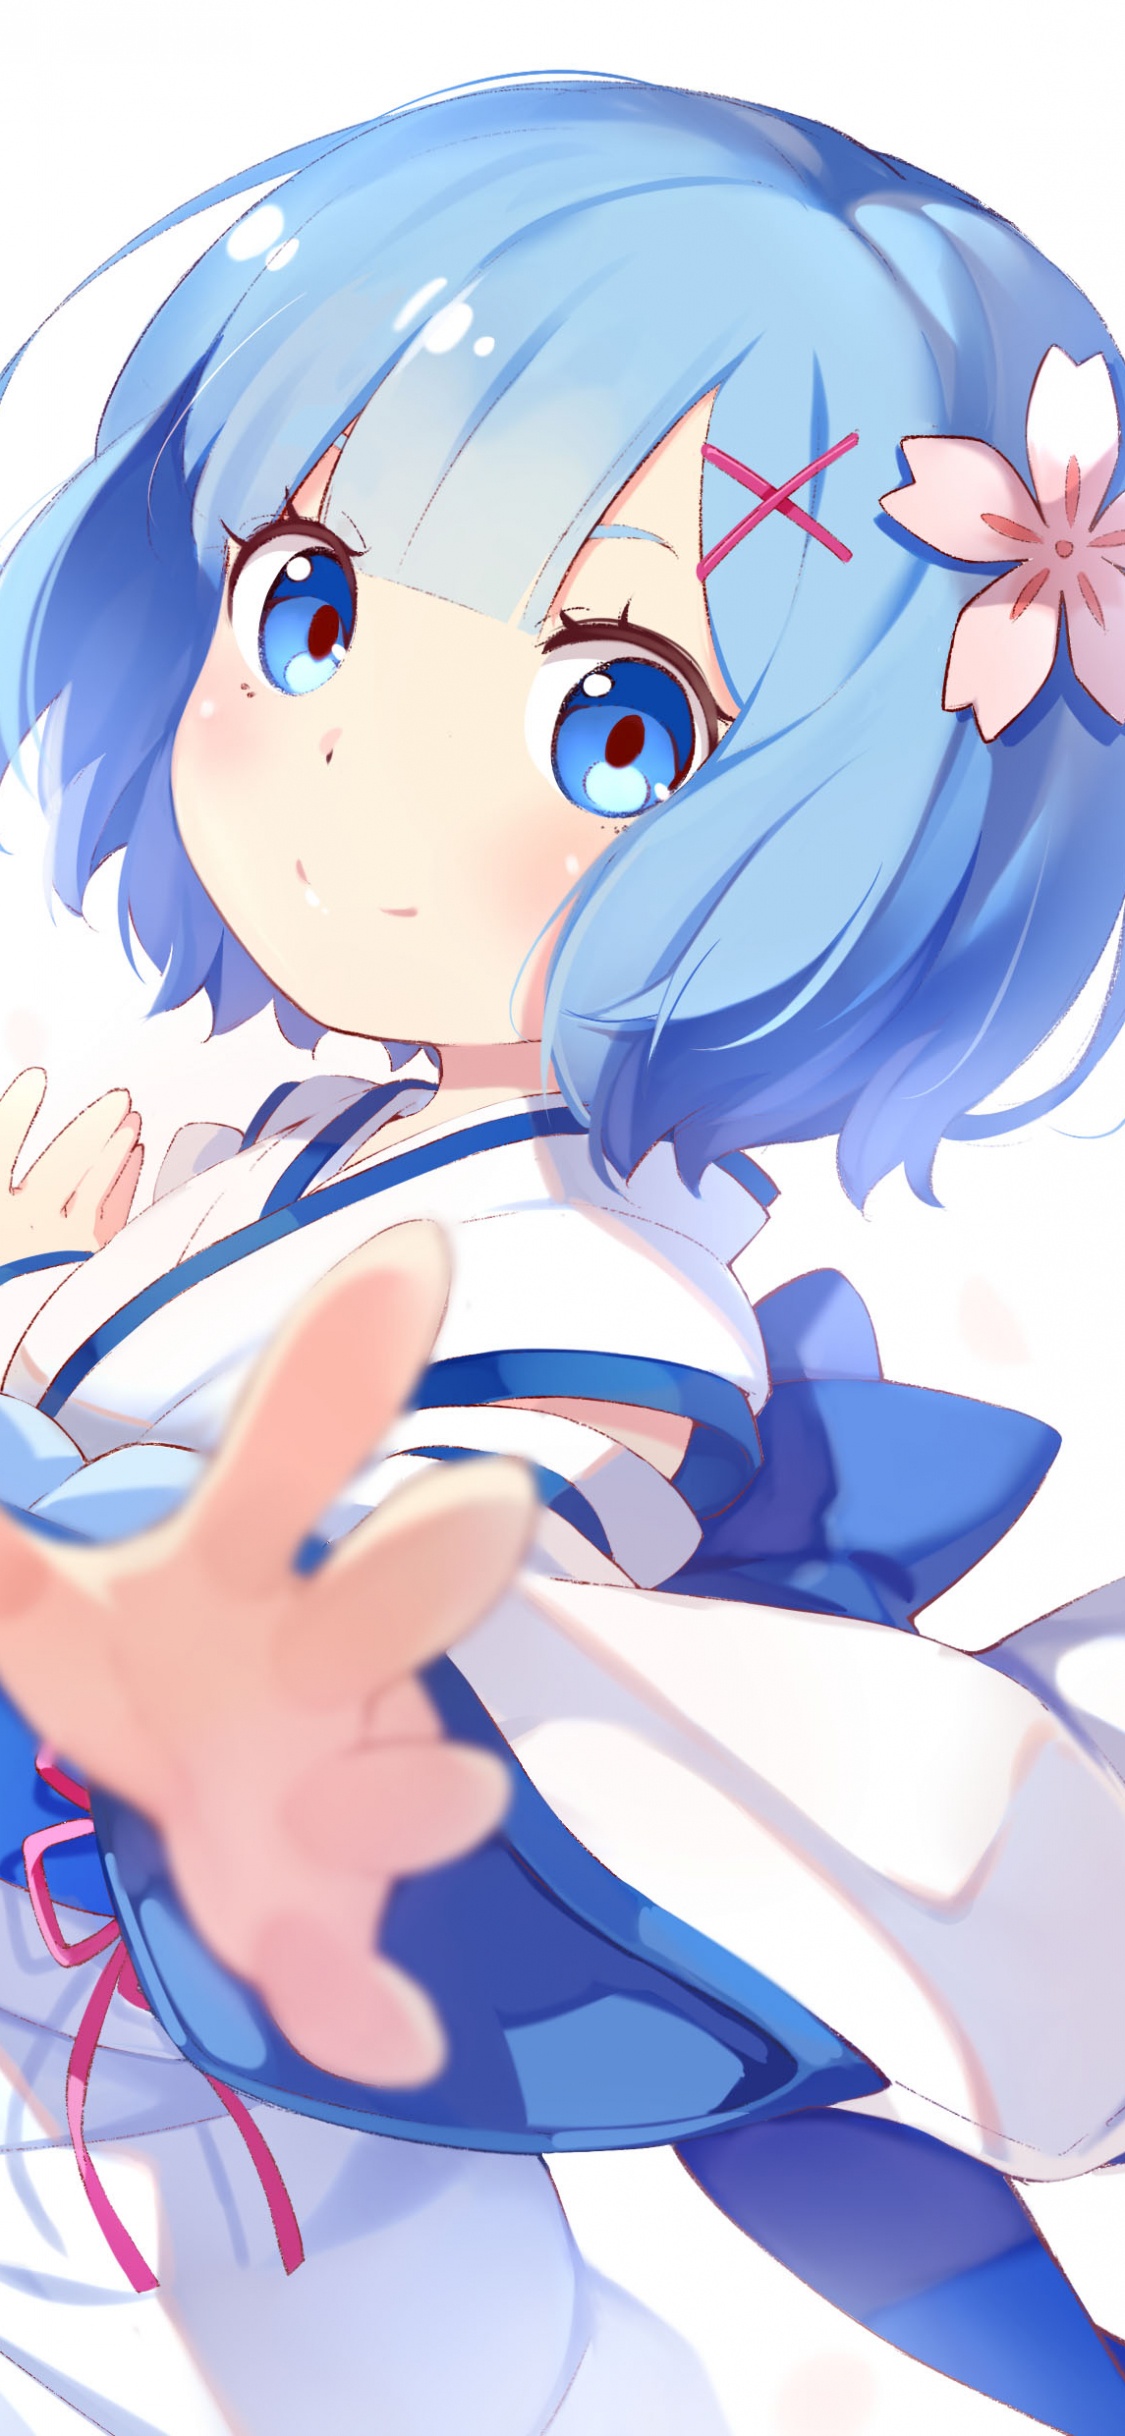 Mädchen im Blauen Kleid Anime-Charakter. Wallpaper in 1125x2436 Resolution